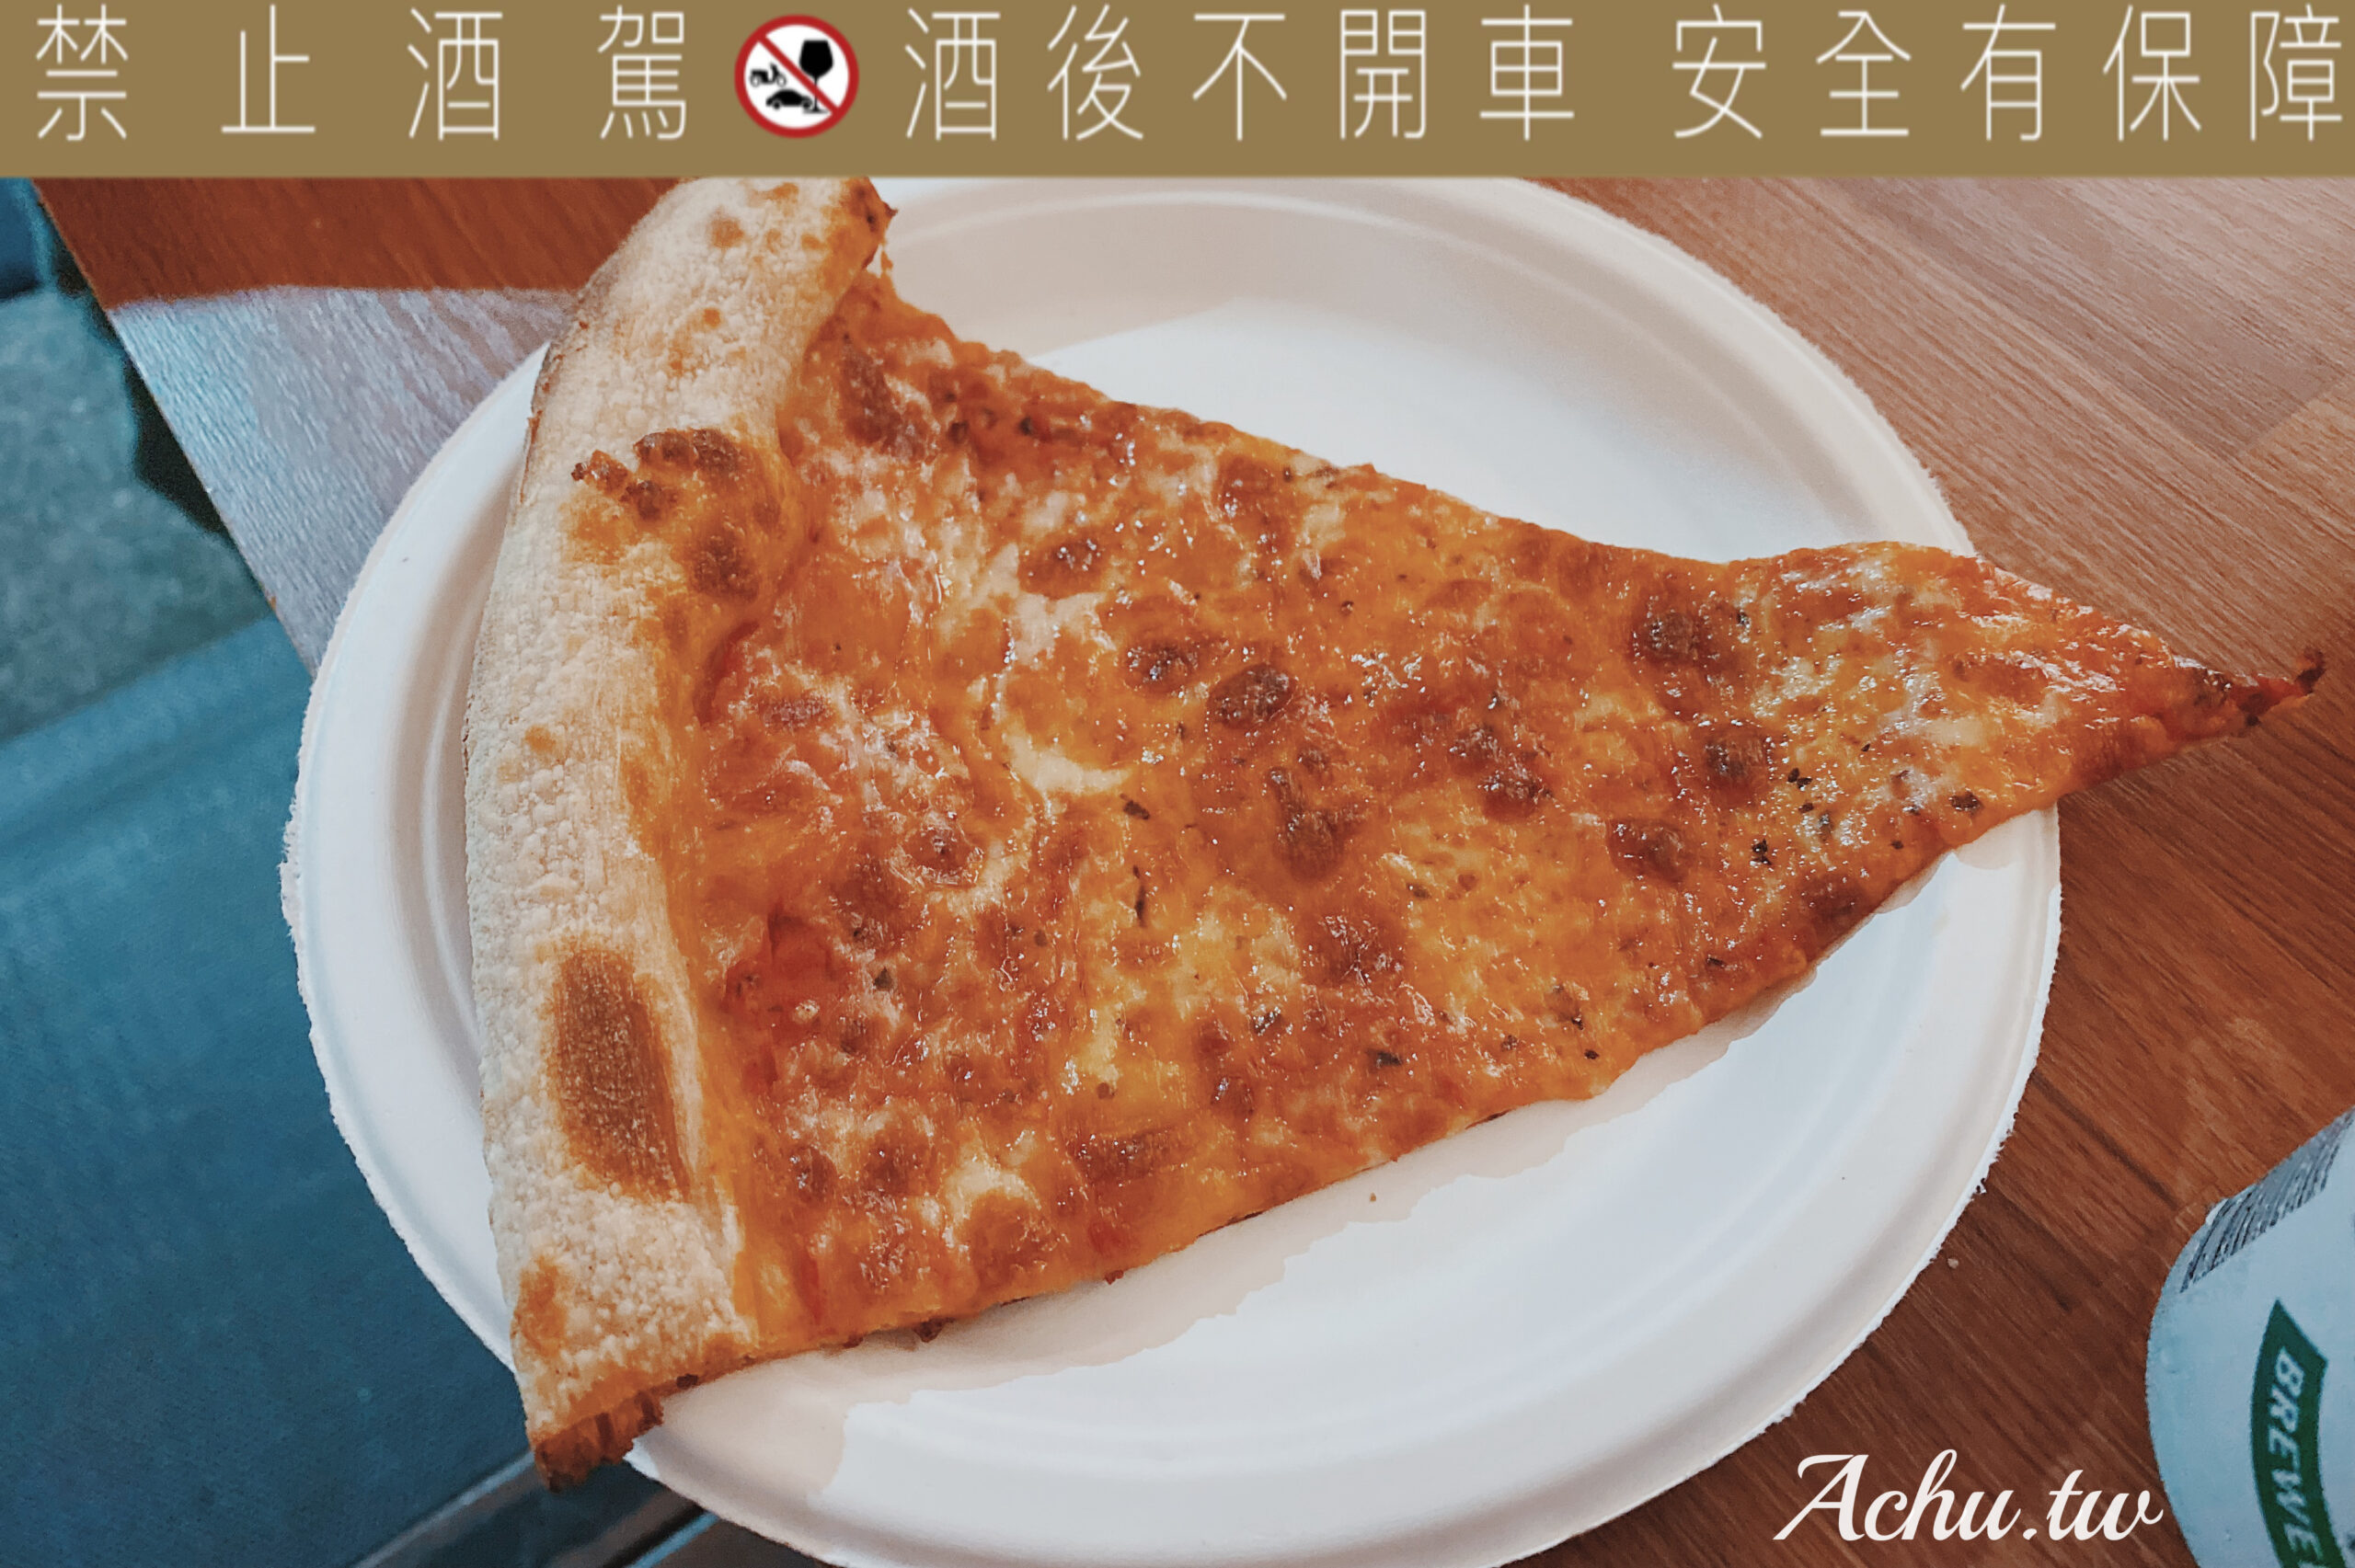 【信義安和美食】The Slice Shop 台北首家使用酸種老麵團的披薩店 (菜單)